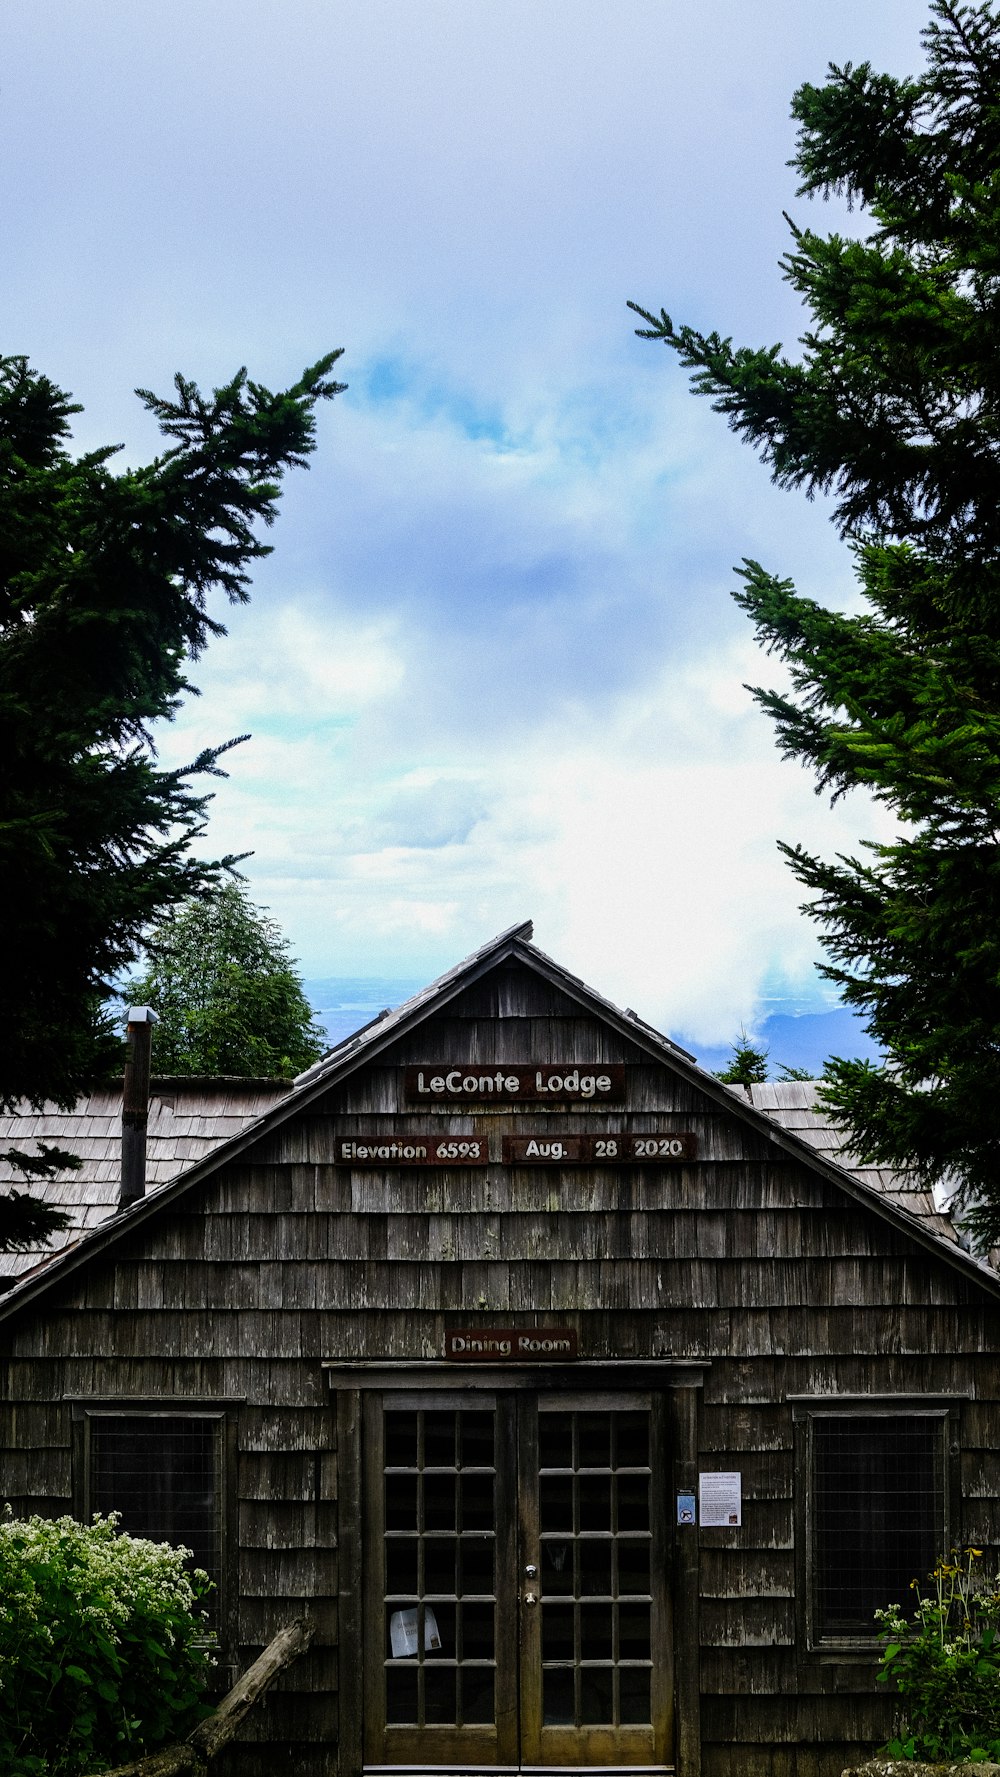 casa de madera marrón cerca de árboles verdes bajo nubes blancas durante el día